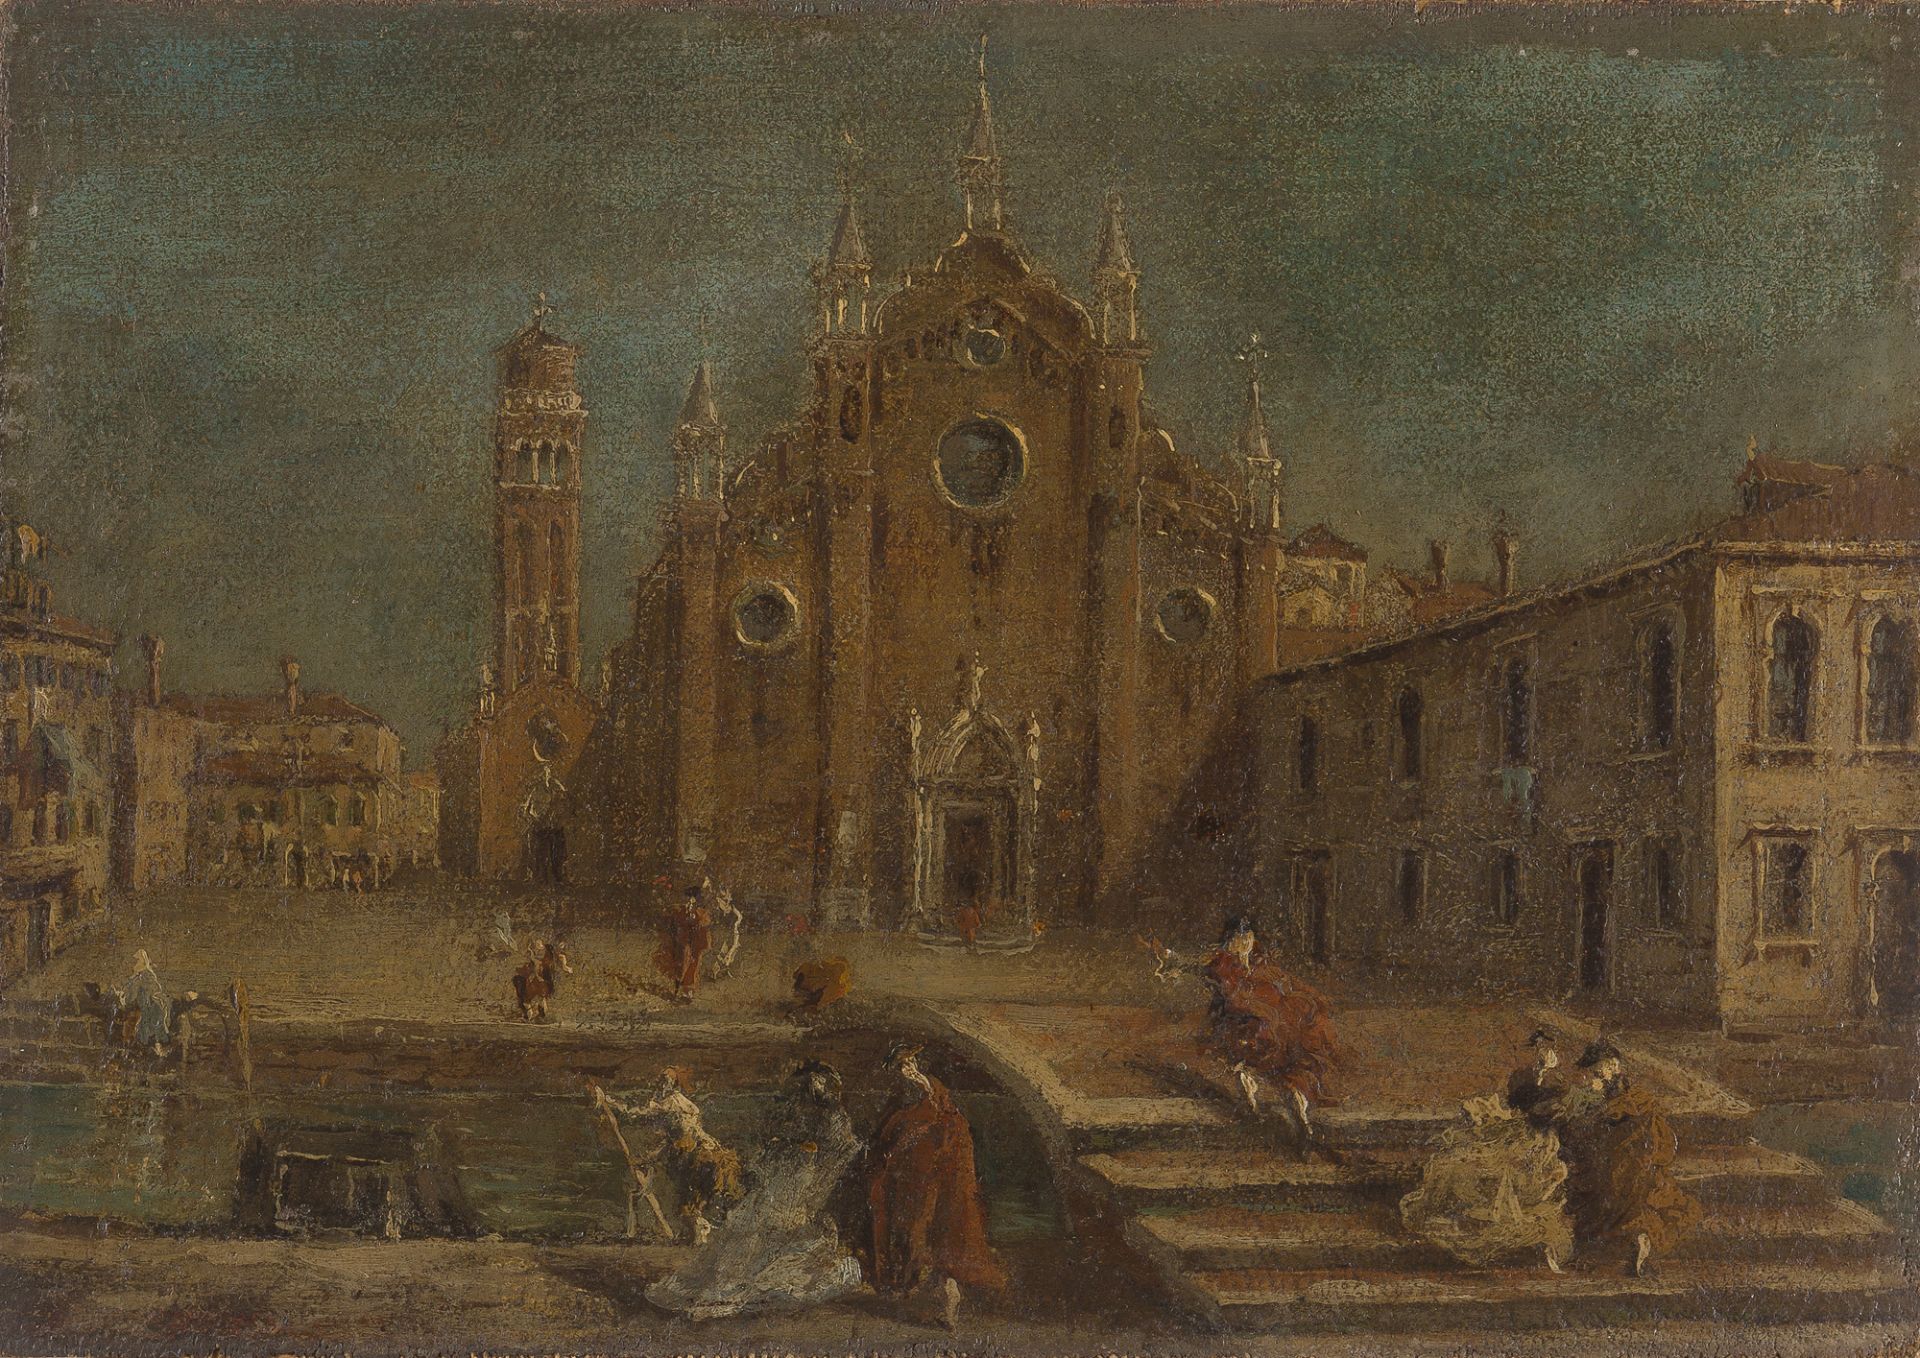 ITALIENISCH


Blick auf die Kirche Santa Maria Gloriosa dei Frari in Venedig.

Öl auf Leinwand,